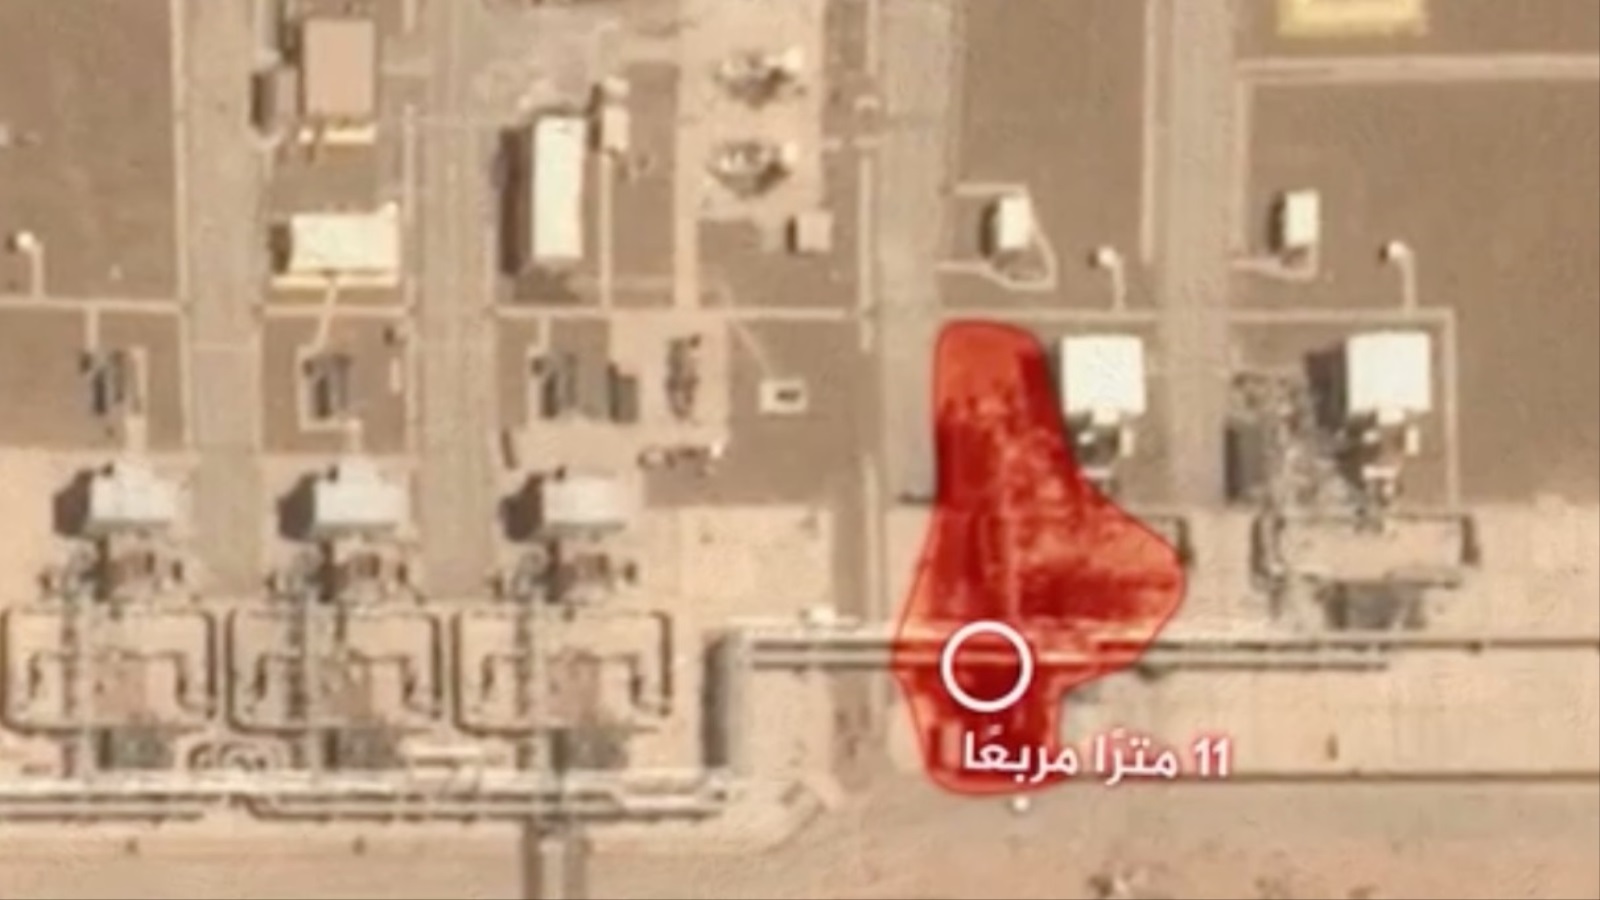 ‪القصف بالطائرات المسيرة استهدف الأنبوب في نطاق 11 مترا‬ (الجزيرة)